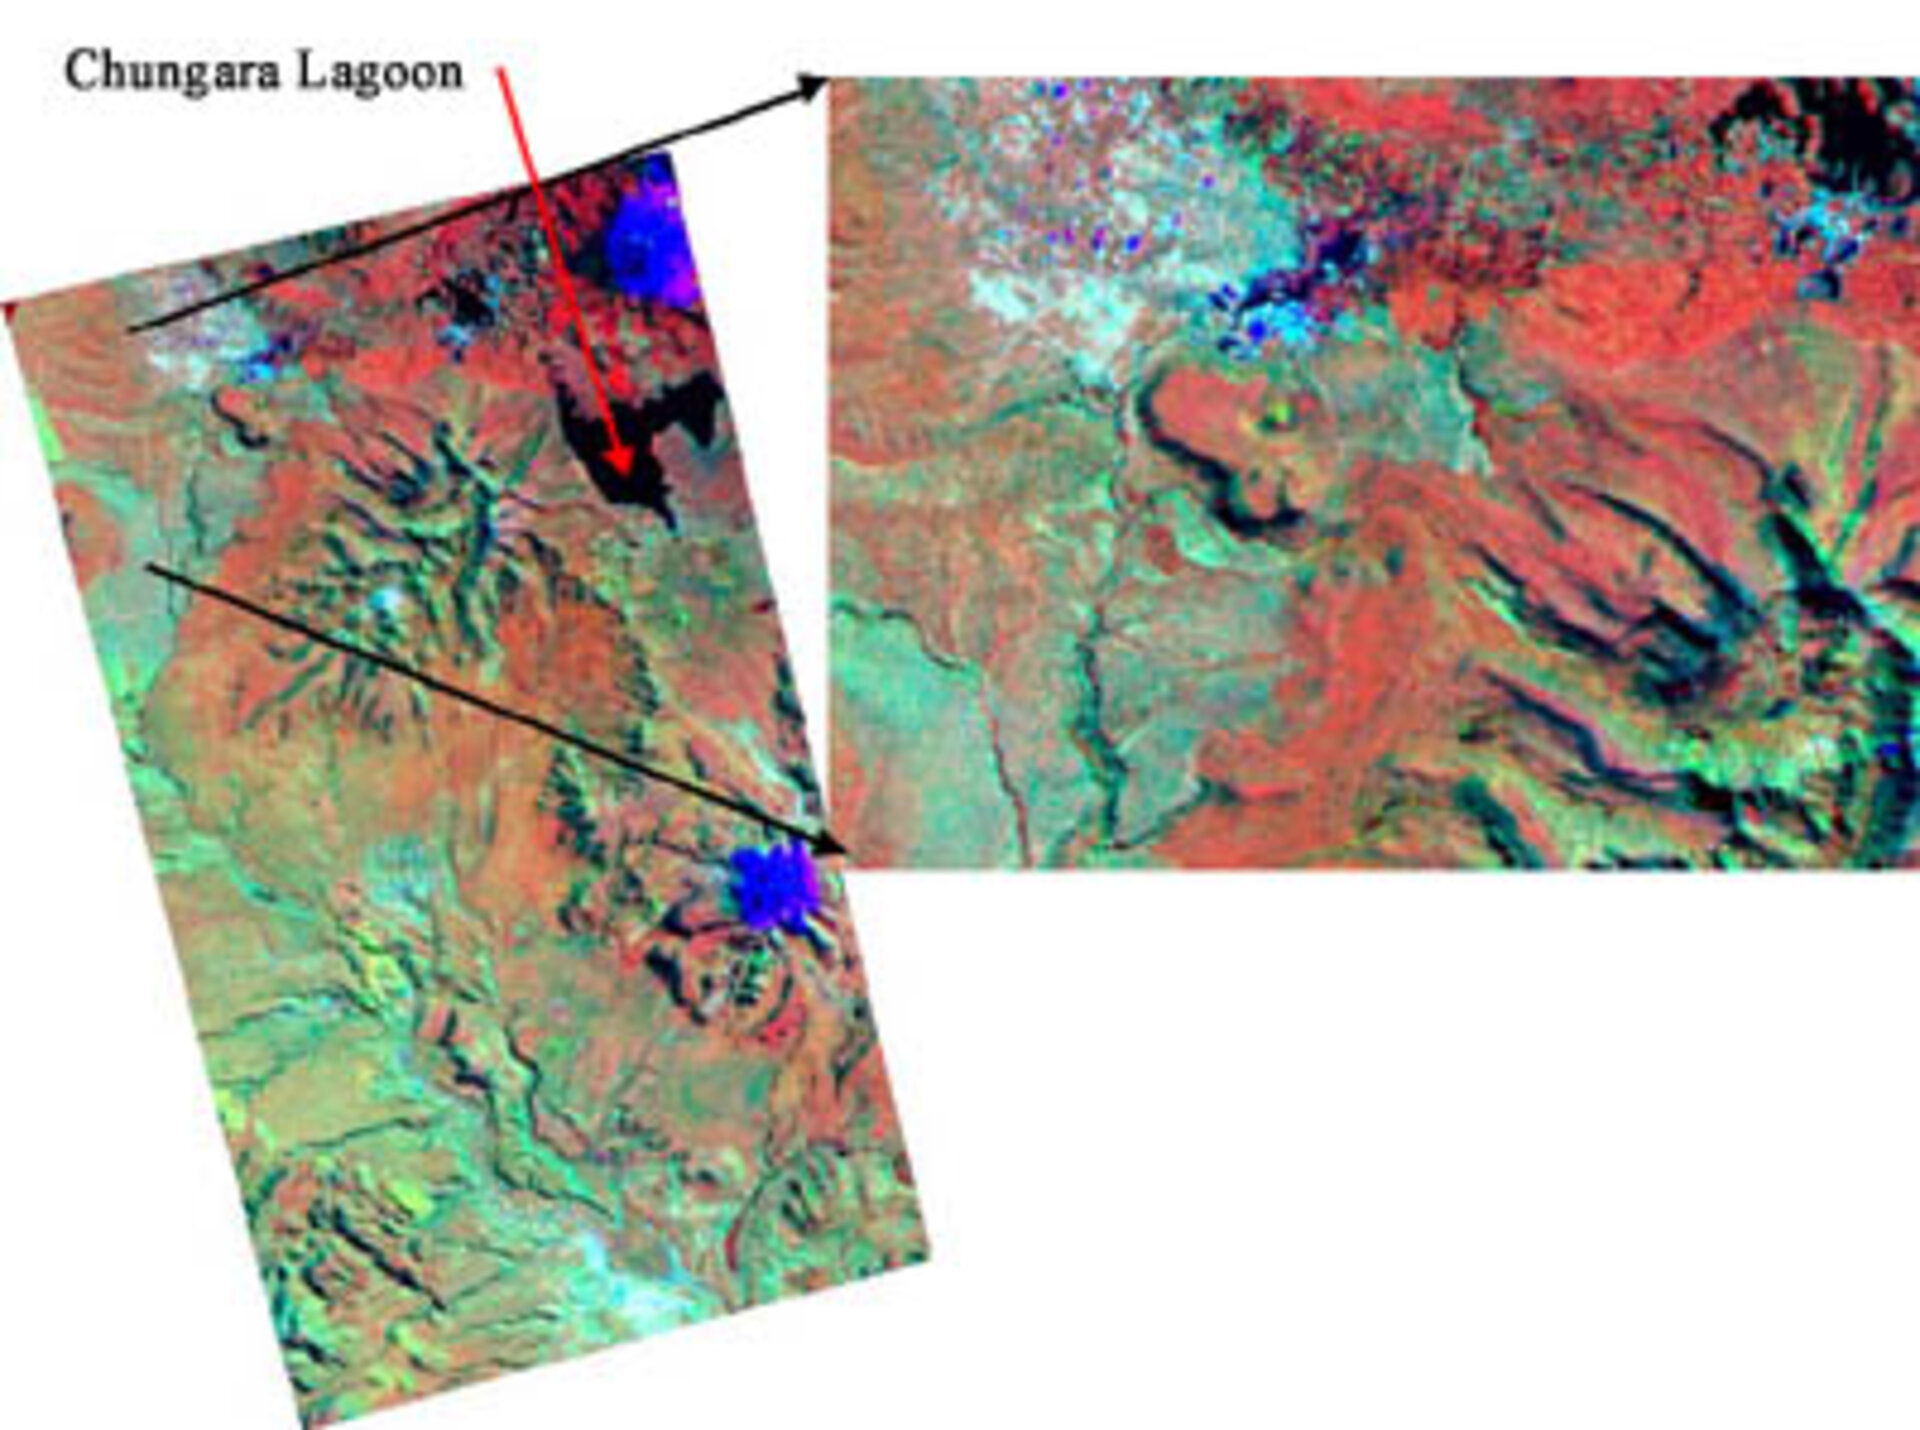 A colour-composite image of the area near Chile's Chungara Lagoon